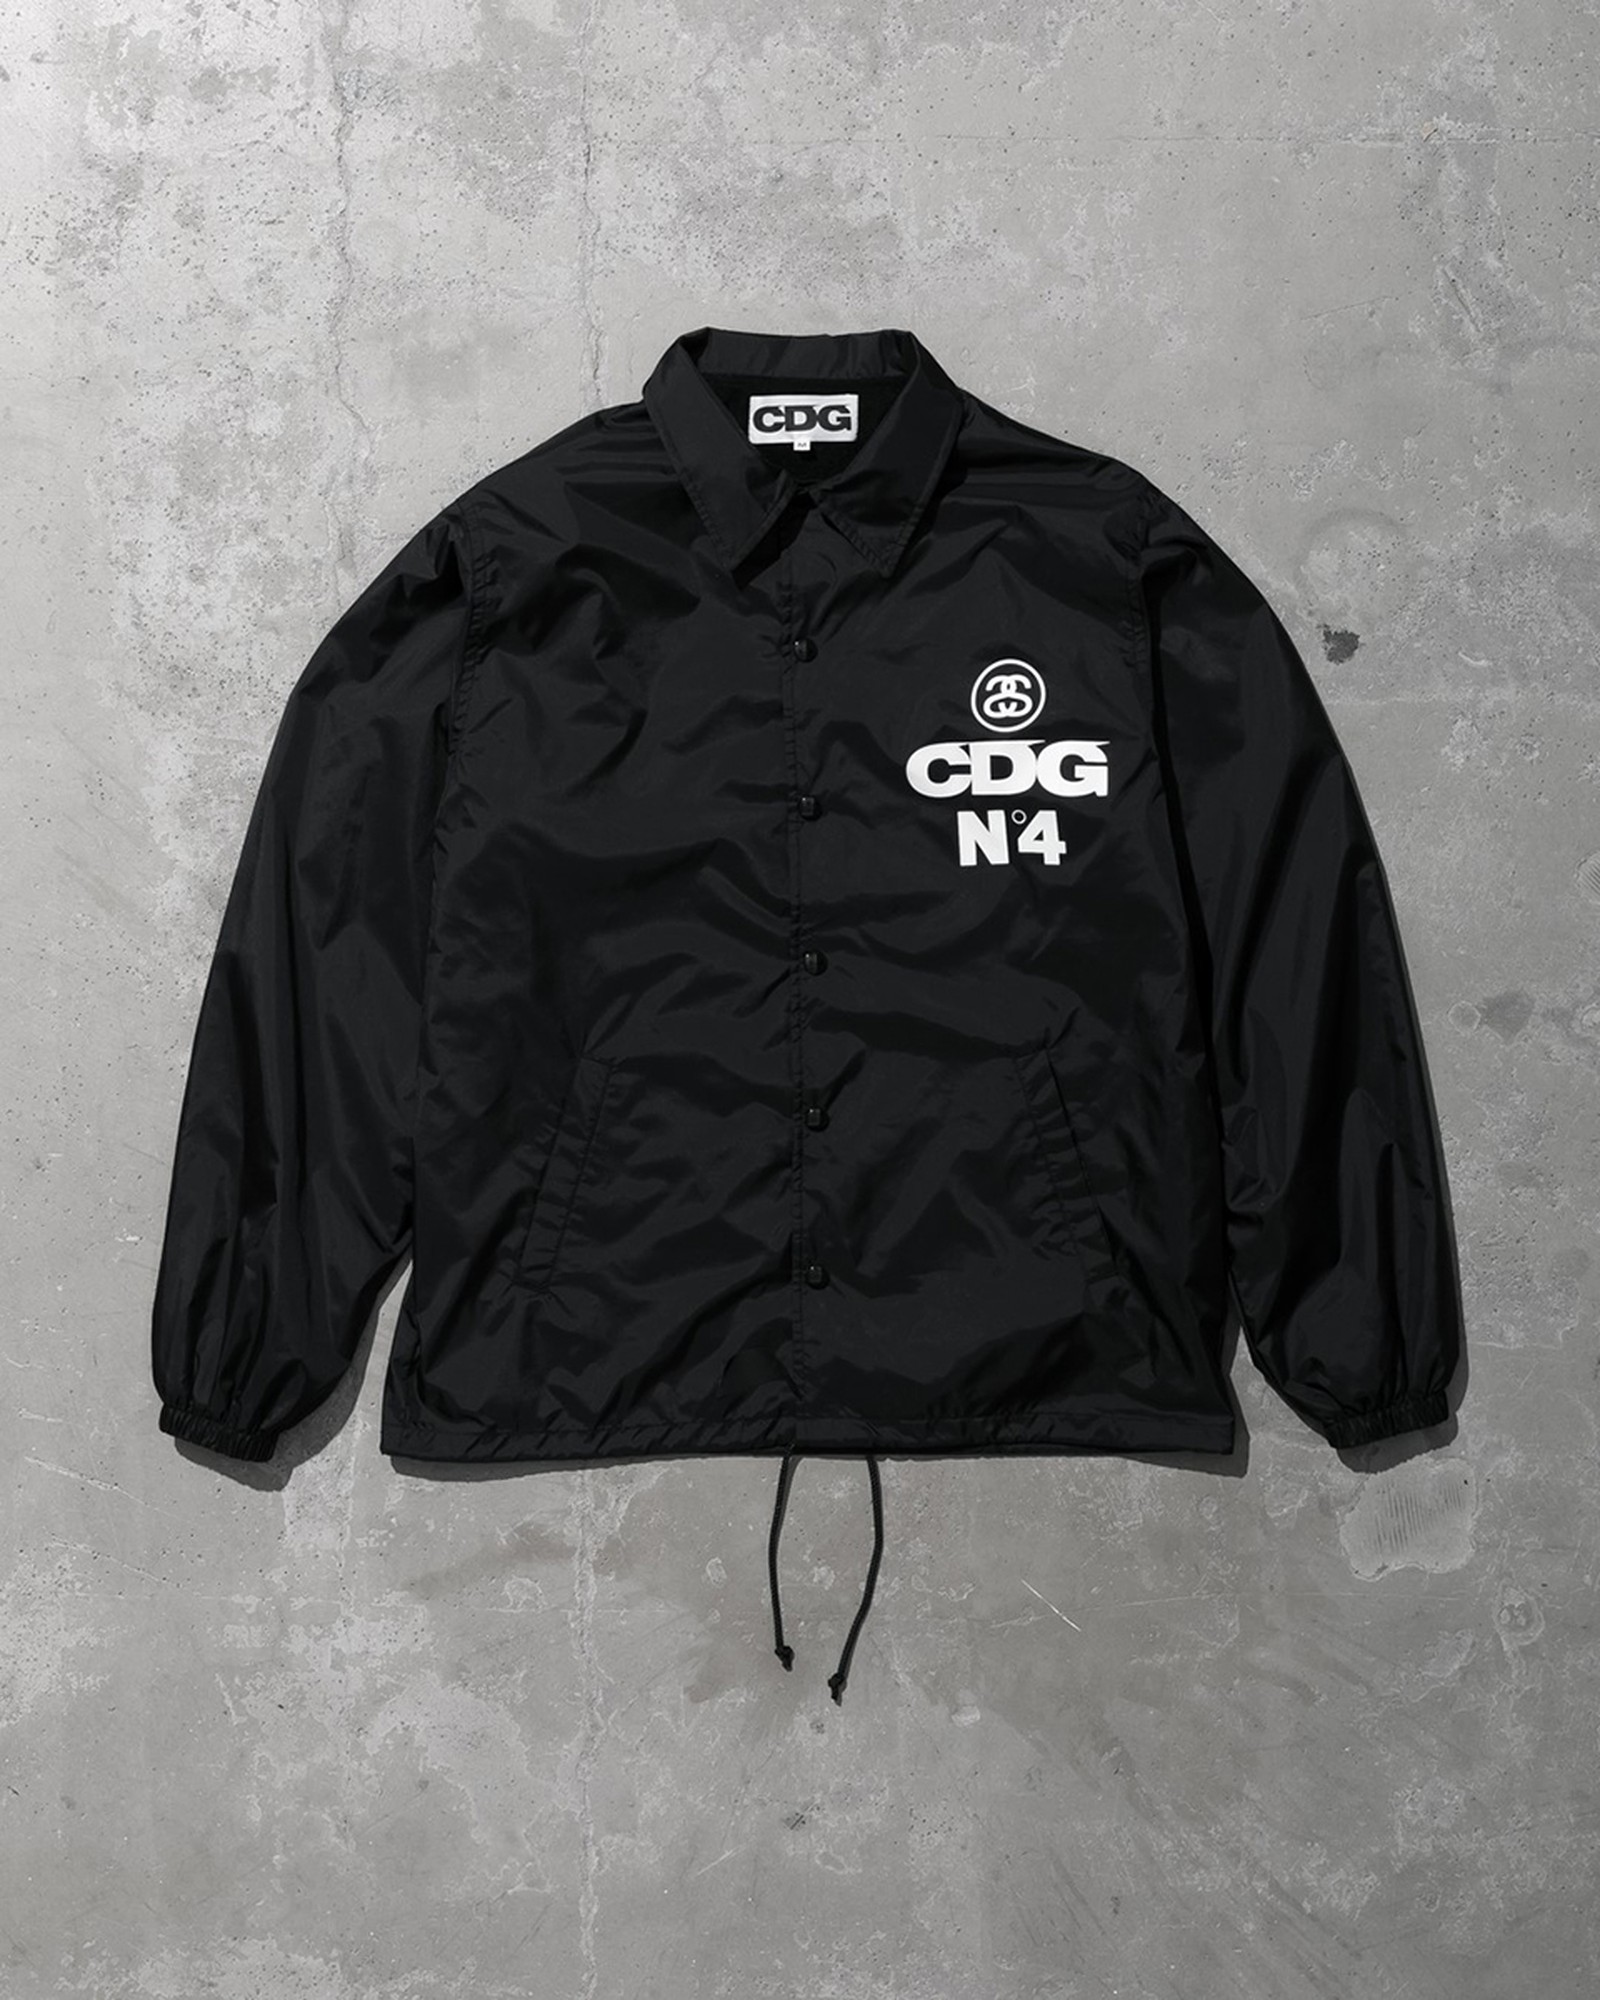 Stüssy x CDG Coaches jacket front